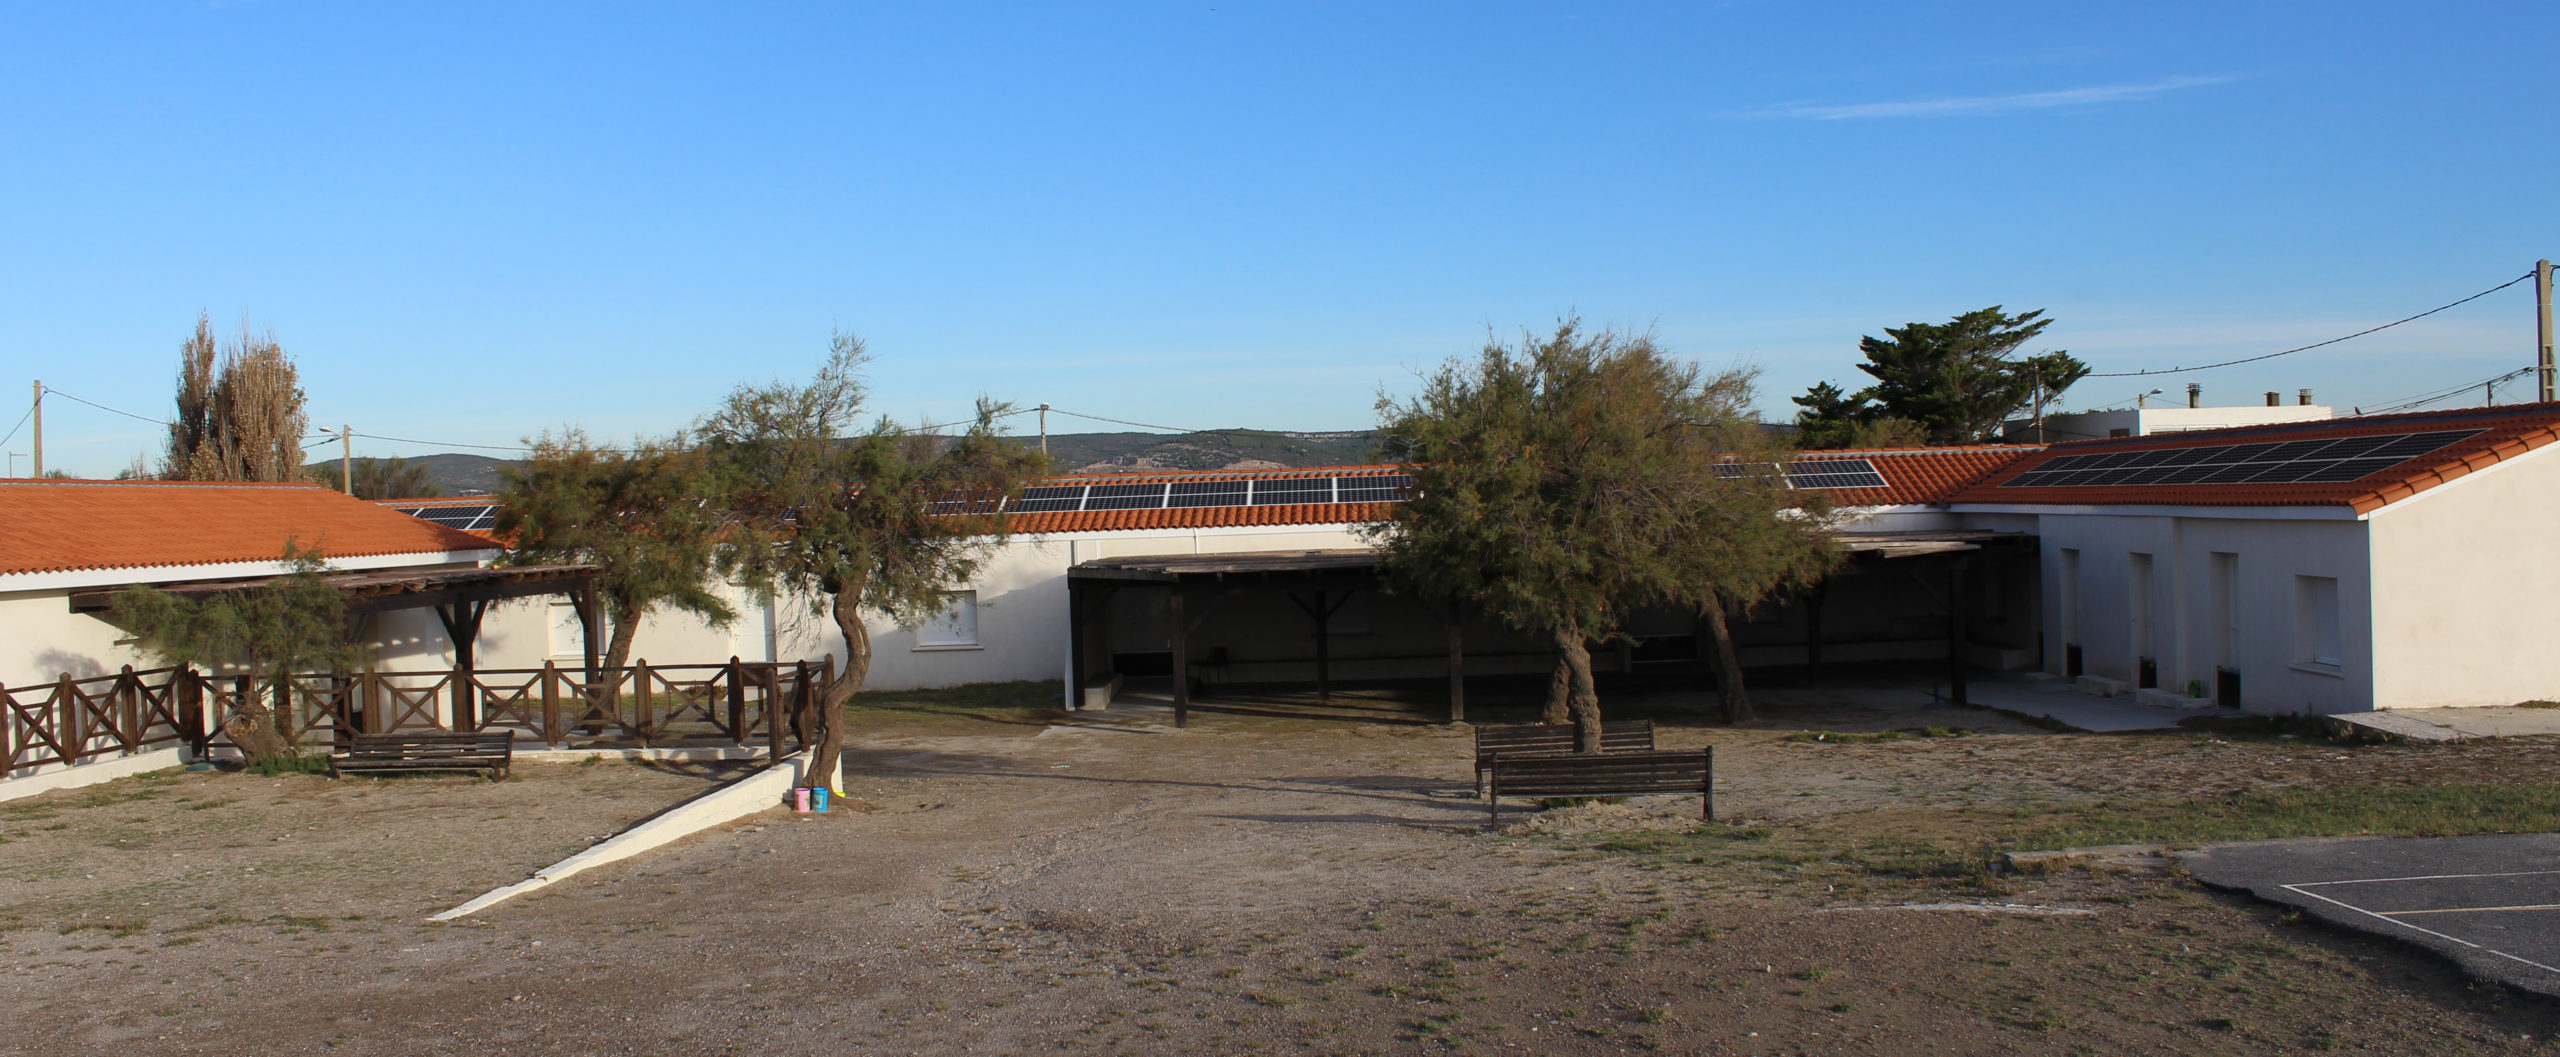 Les Mouettes Frontignan - montage photo du projet d'installation photovoltaïque